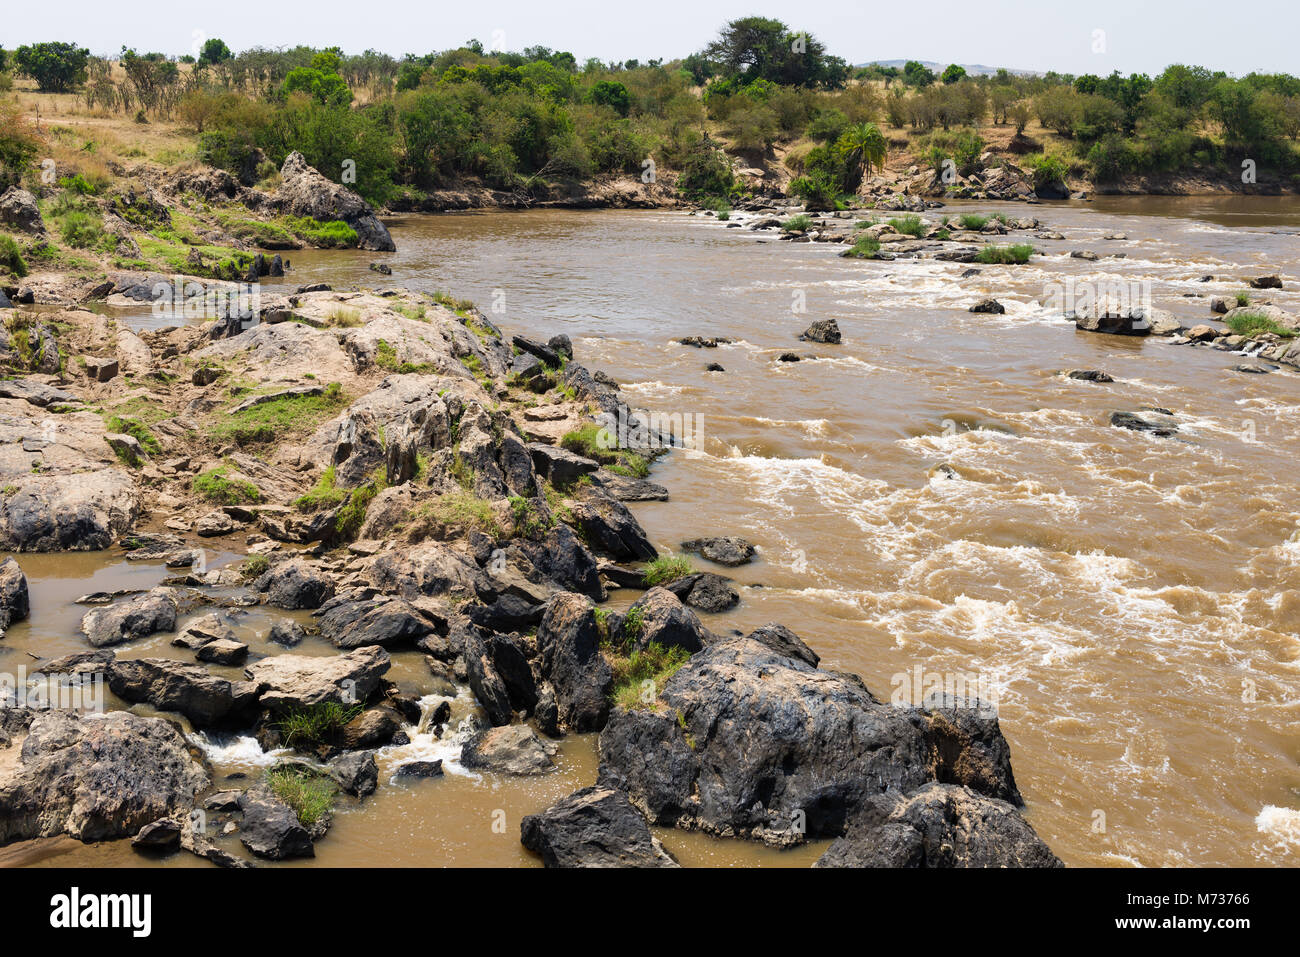 La rivière Mara circulant dans le Masai Mara National Reserve, des rochers et de la végétation sur les rives de la ligne d'une journée ensoleillée, au Kenya Banque D'Images